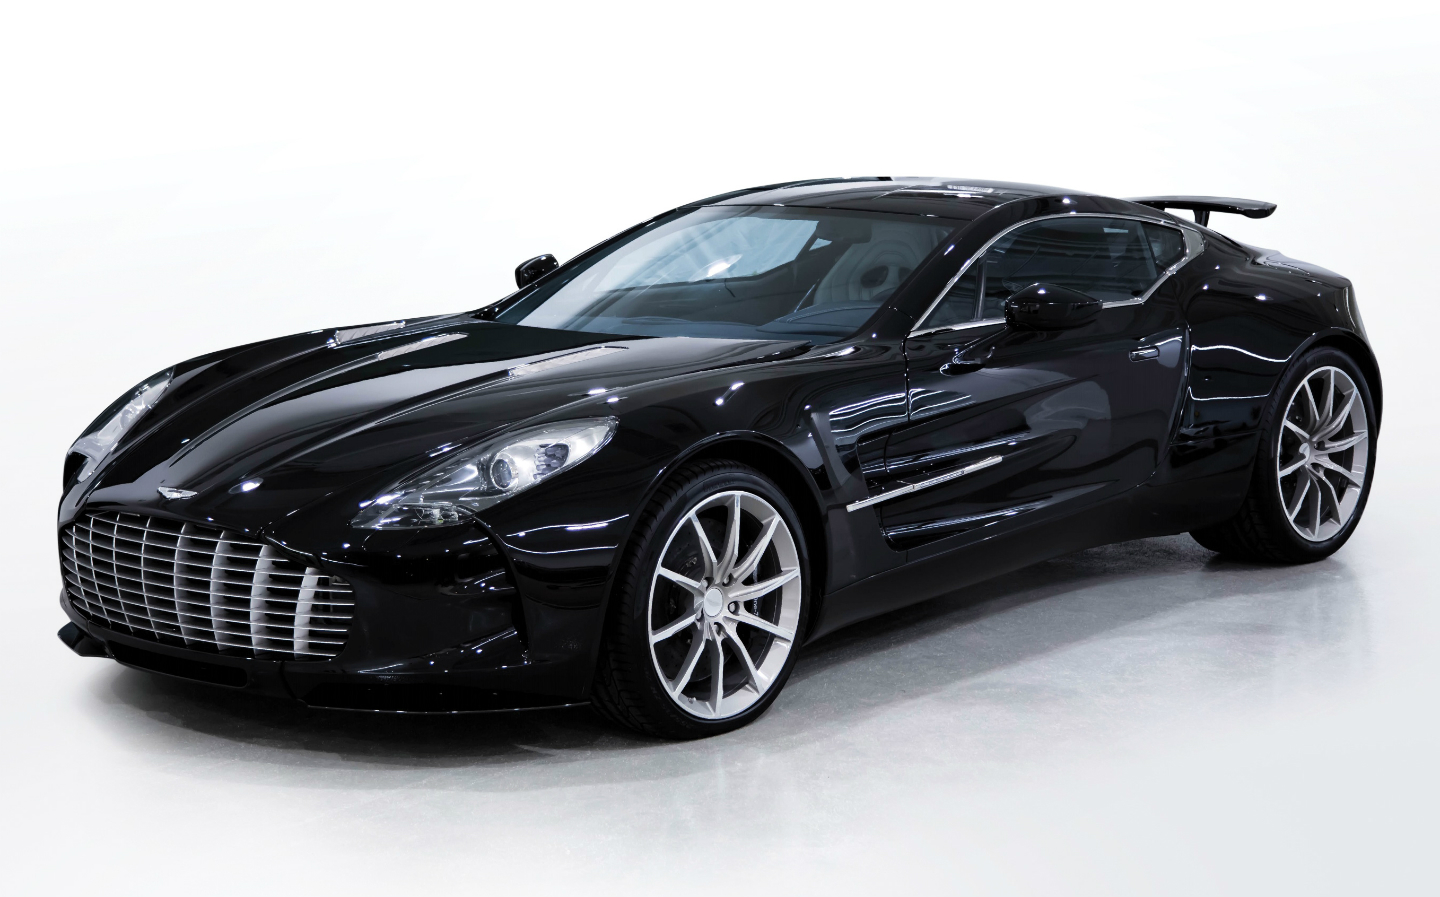 2011 Aston Martin One-77 RM Sotheby's 2019 Abu Dhabi auction